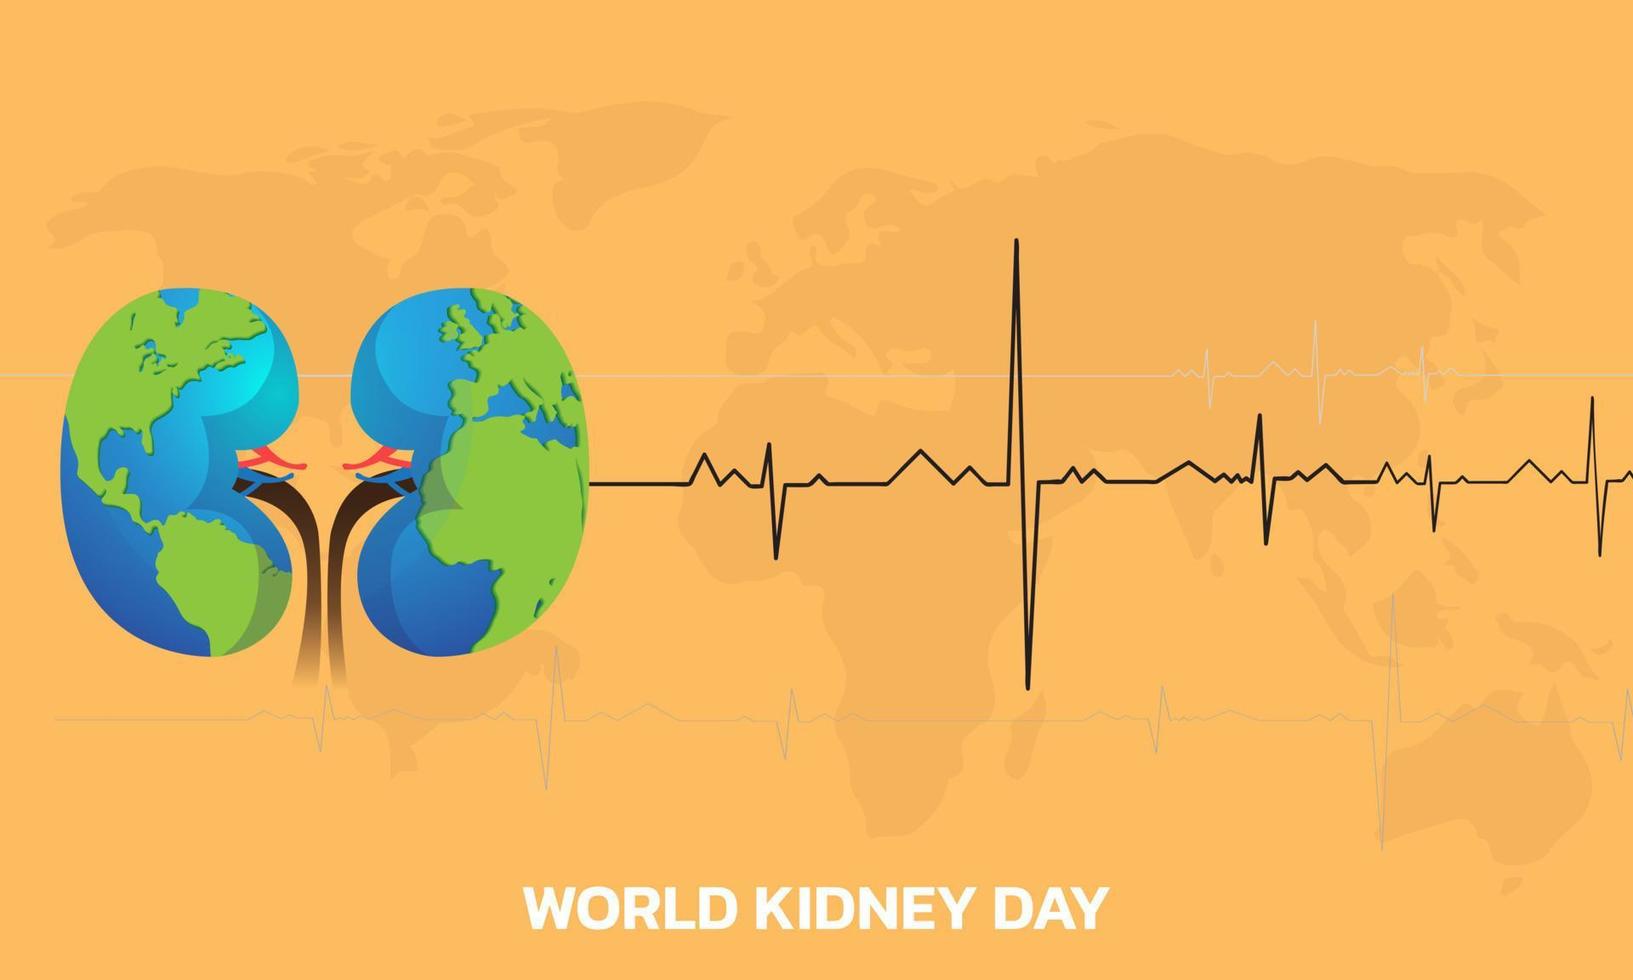 Vector illustration for World Kidney Day.